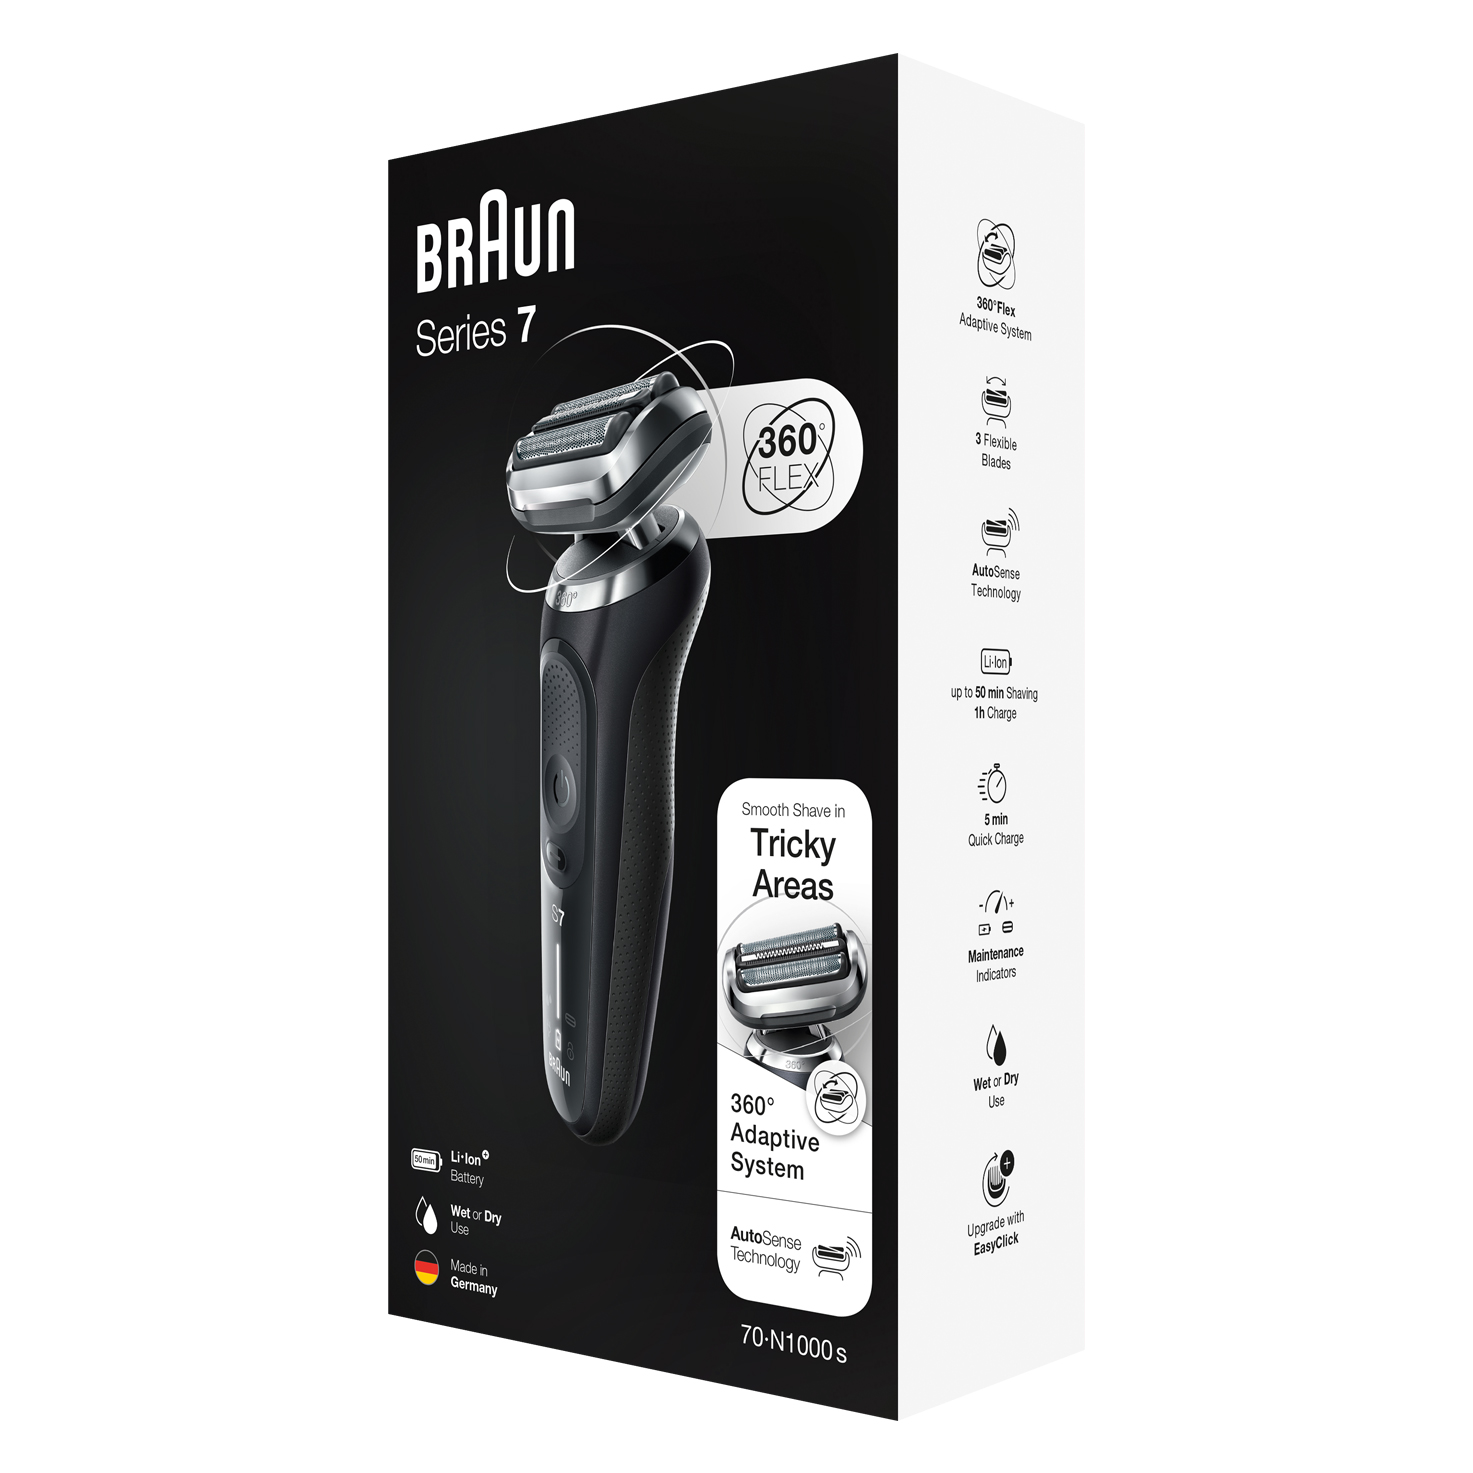 Braun Series 7 70-N1000s shaver - packaging